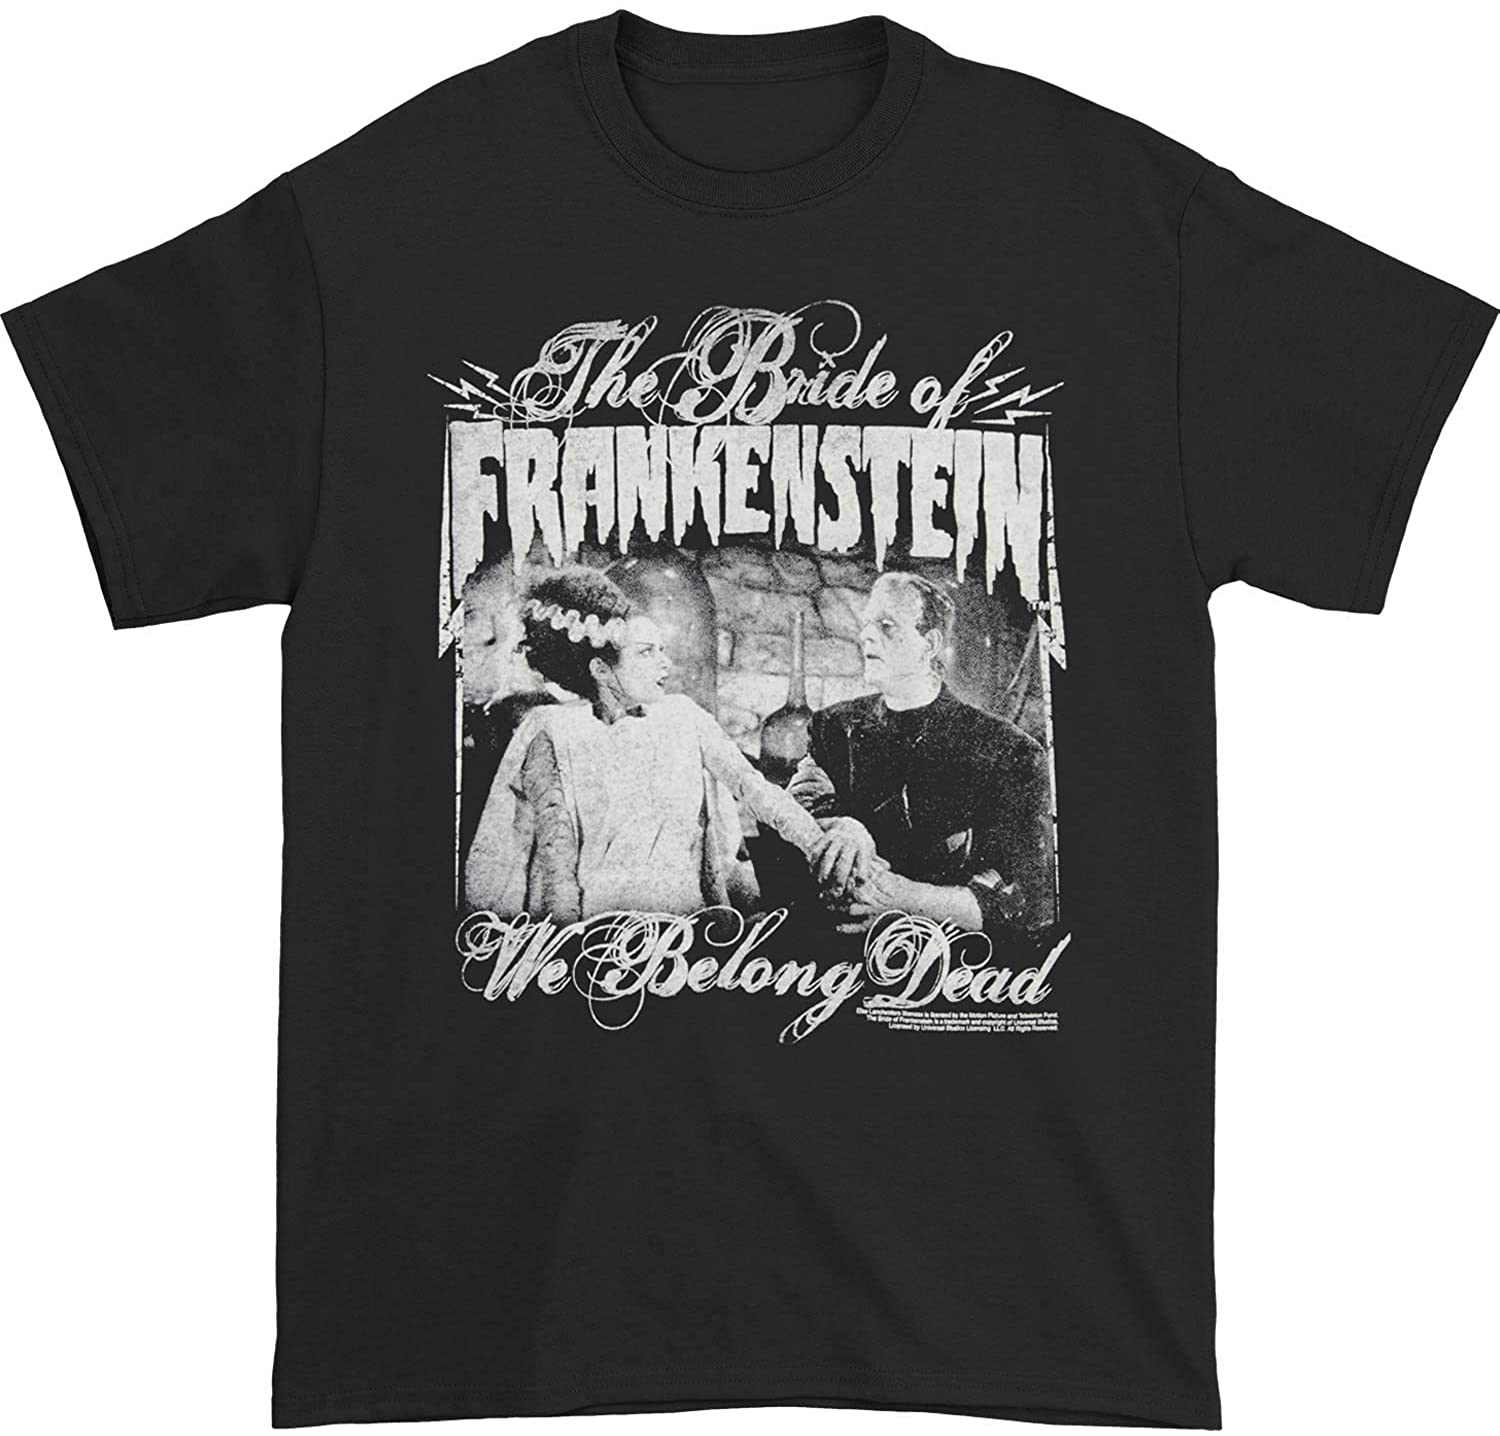 Universal Monsters Men's We Belong Dead T-Shirt Black